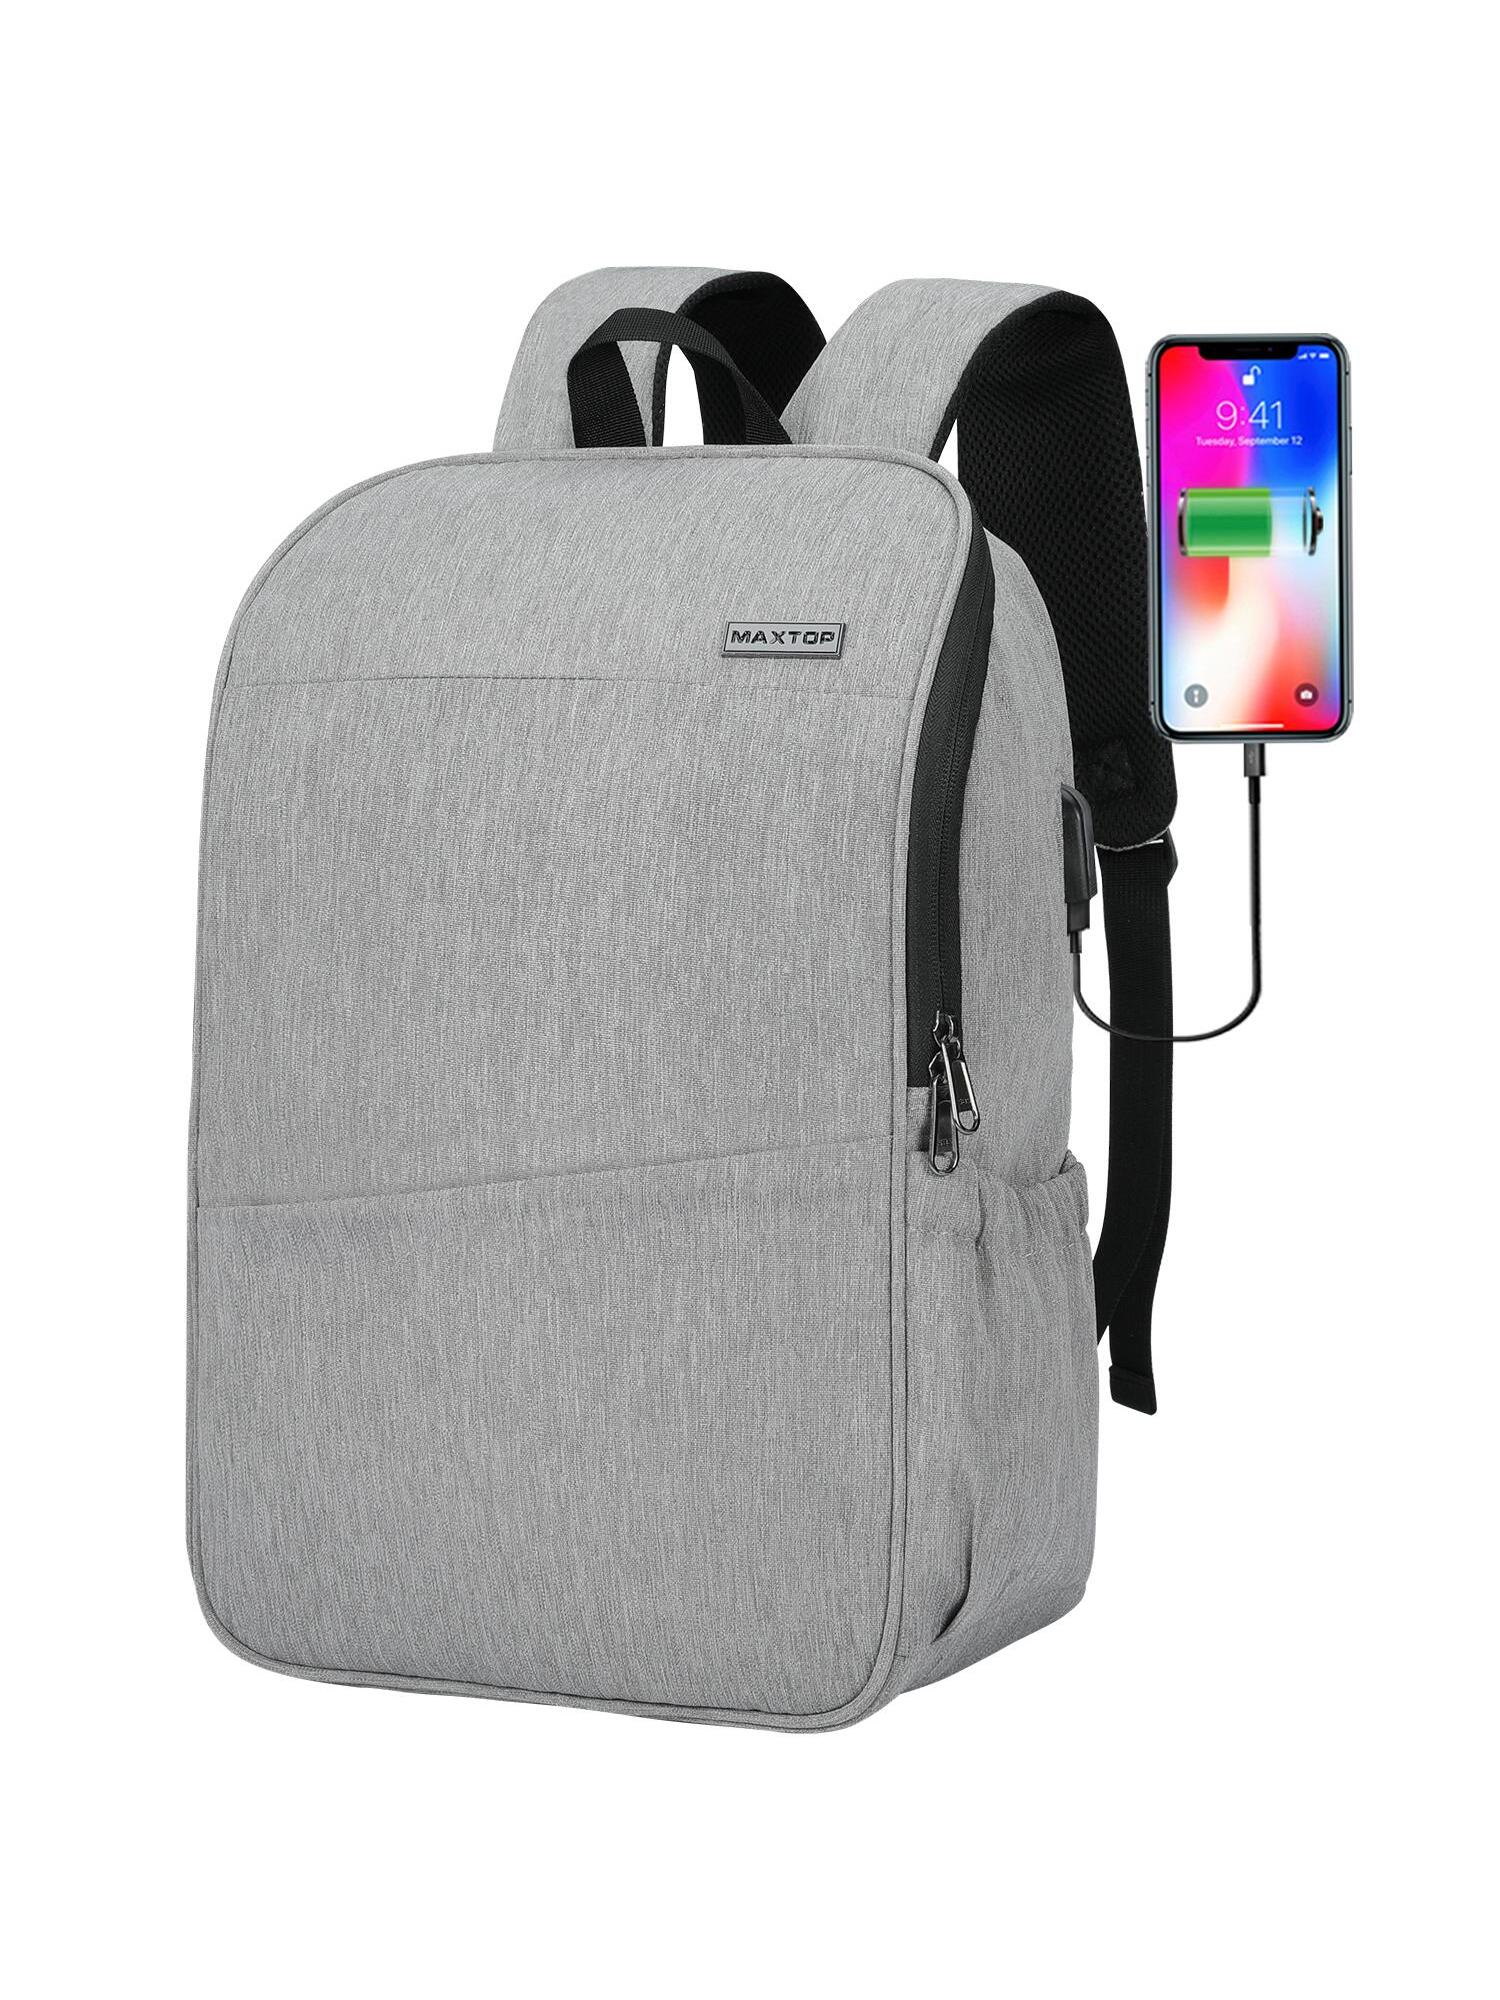 Рюкзак для ноутбука MAXTOP с глубоким хранилищем и USB-портом для зарядки Сумка для студенческого компьютера Подходит для 16-дюймового ноутбука, светло-серый сумка на плечо для женщин водонепроницаемый рюкзак для ноутбука с usb портом для зарядки с карманом для обуви вместительный ранец